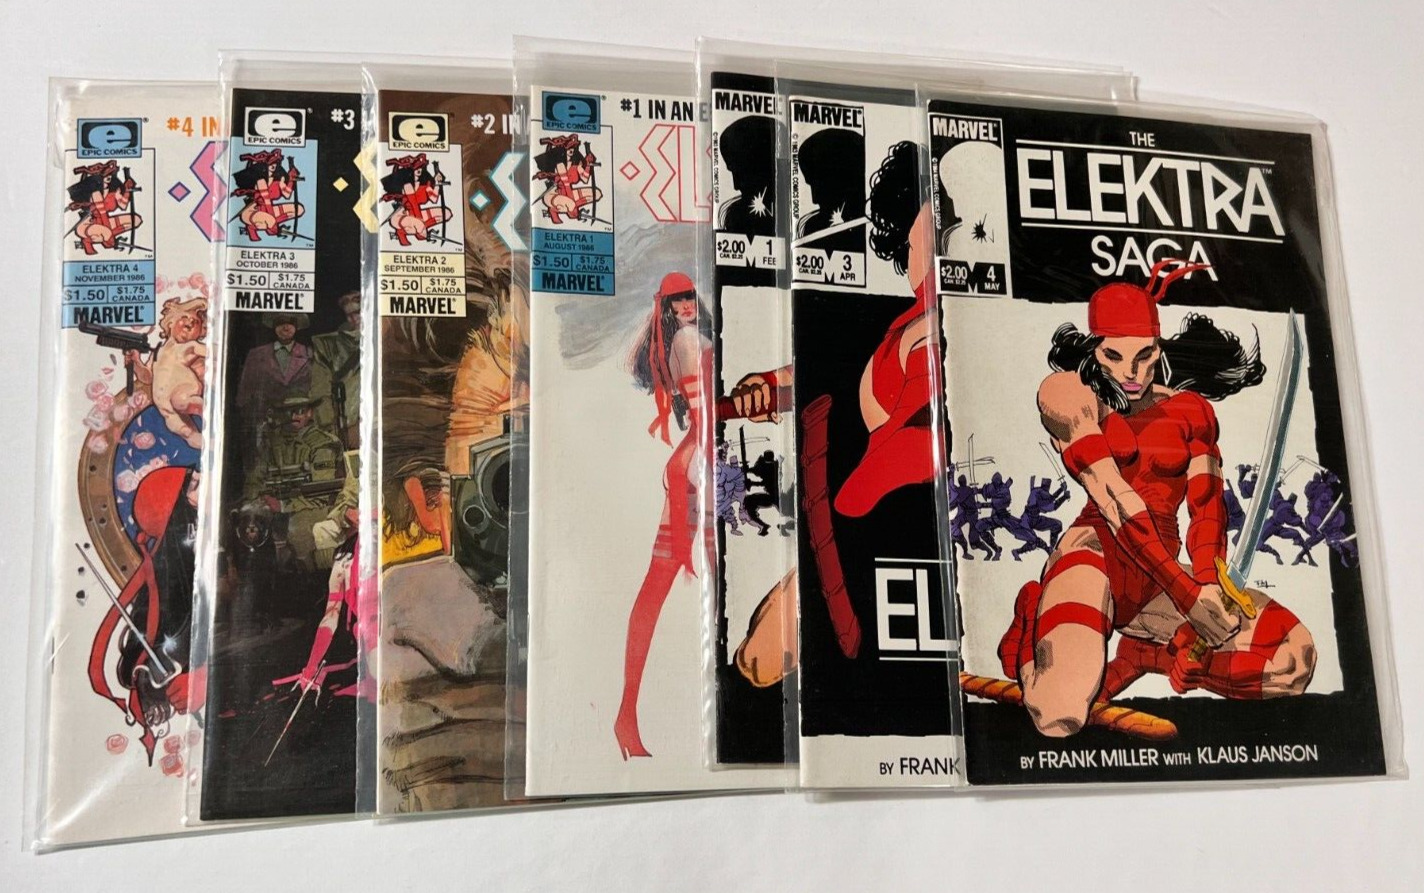 Elektra Saga #1,3,4  assasin 1-4 (1984, Marvel) (7) comic LOT  Frank Miller